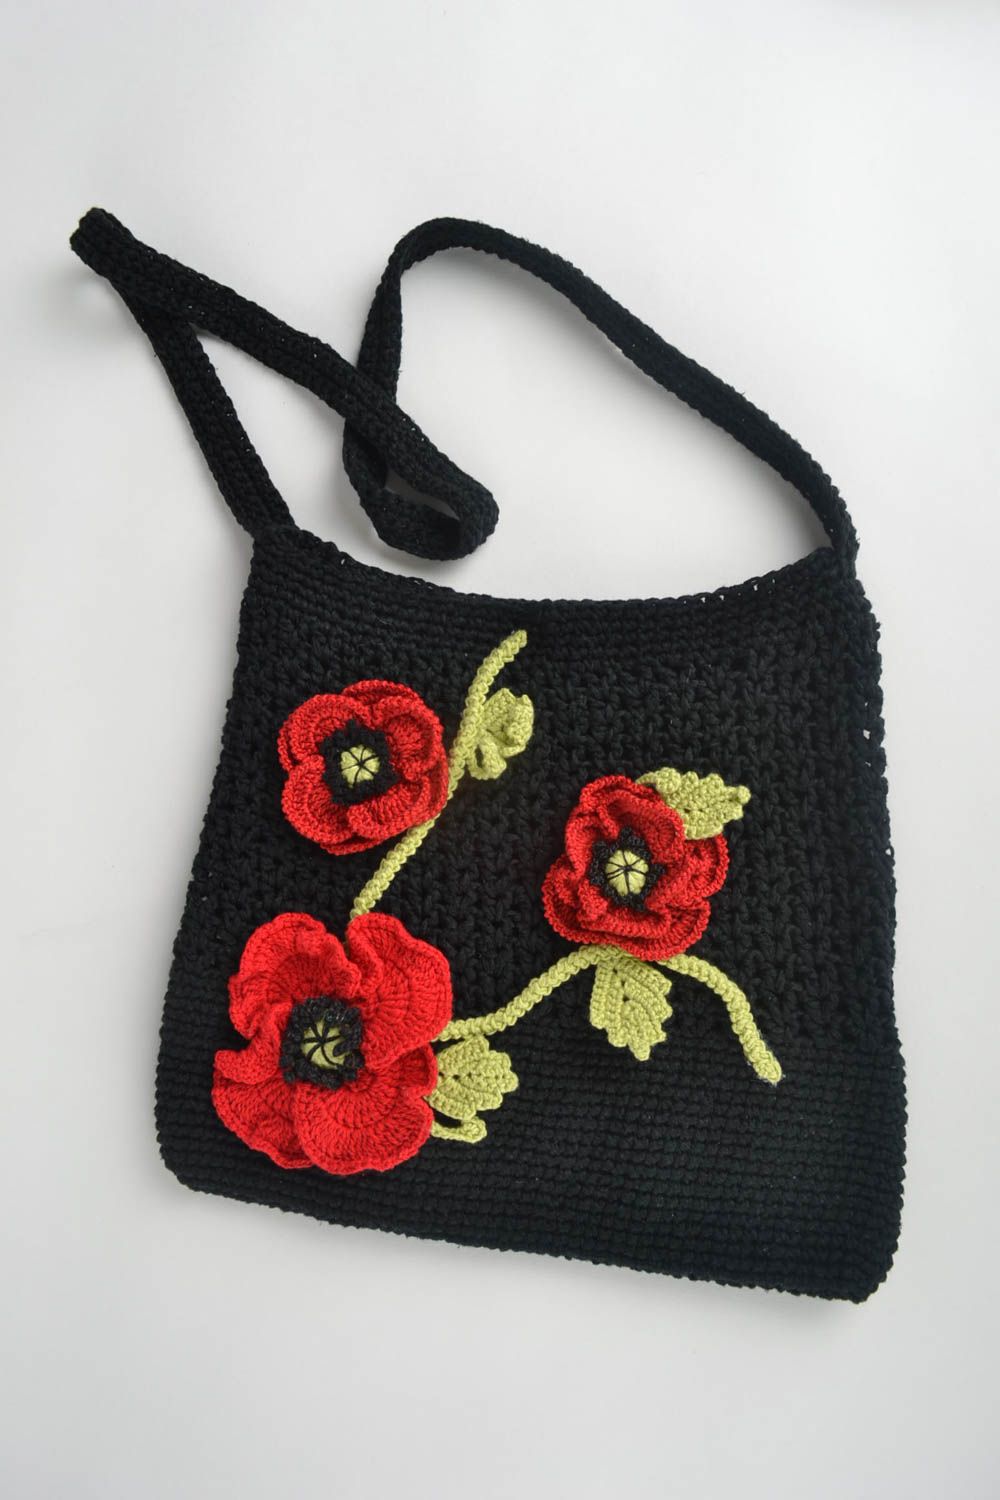 Sac noir tricoté coton fait main Accessoire femme avec fleurs Cadeau original photo 2